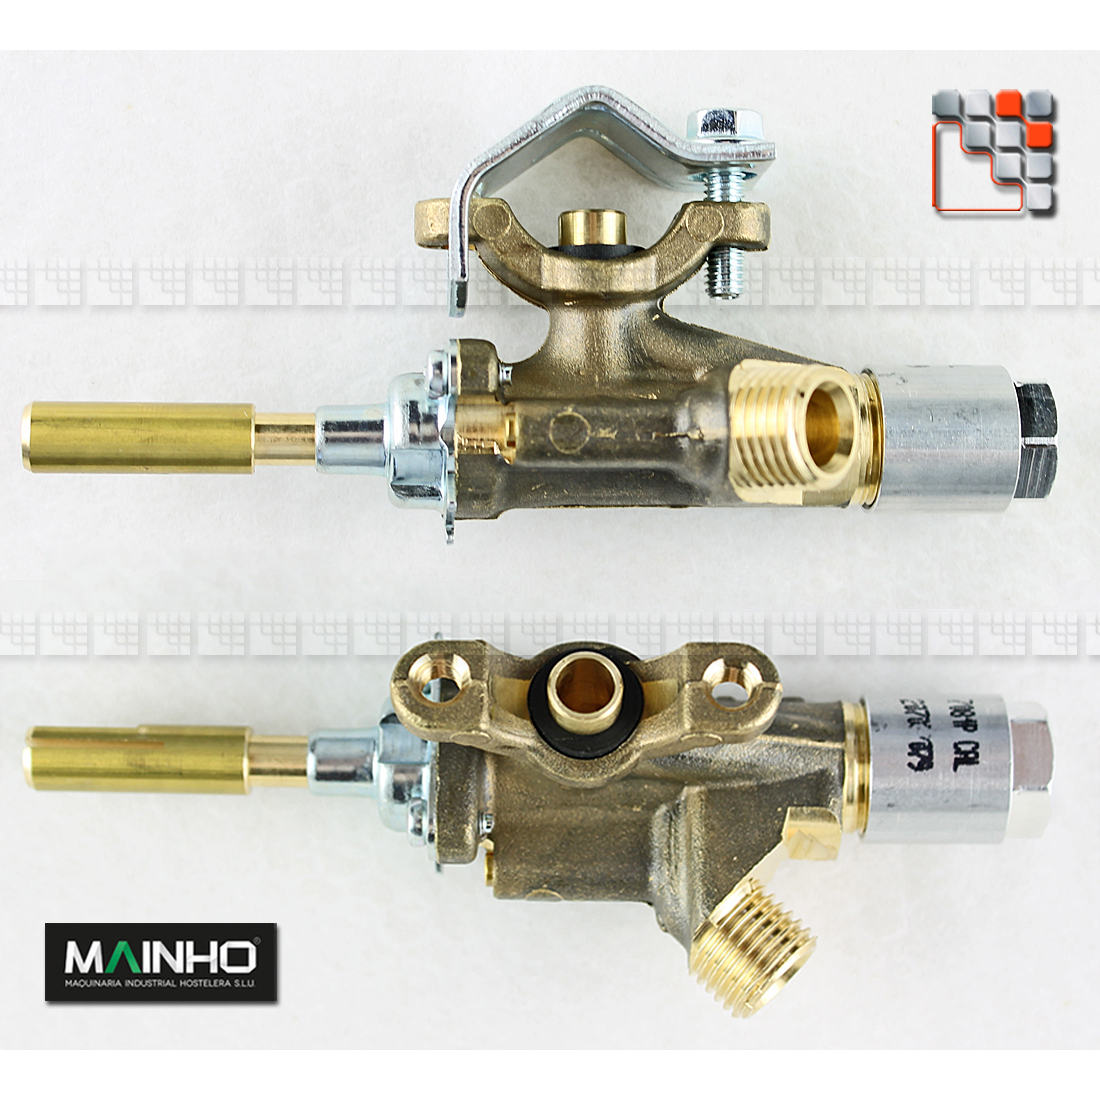 Thermocouple gas valve MAINHO M36-3000001 MAINHO SAV - Accessoires Spare parts MAINHO